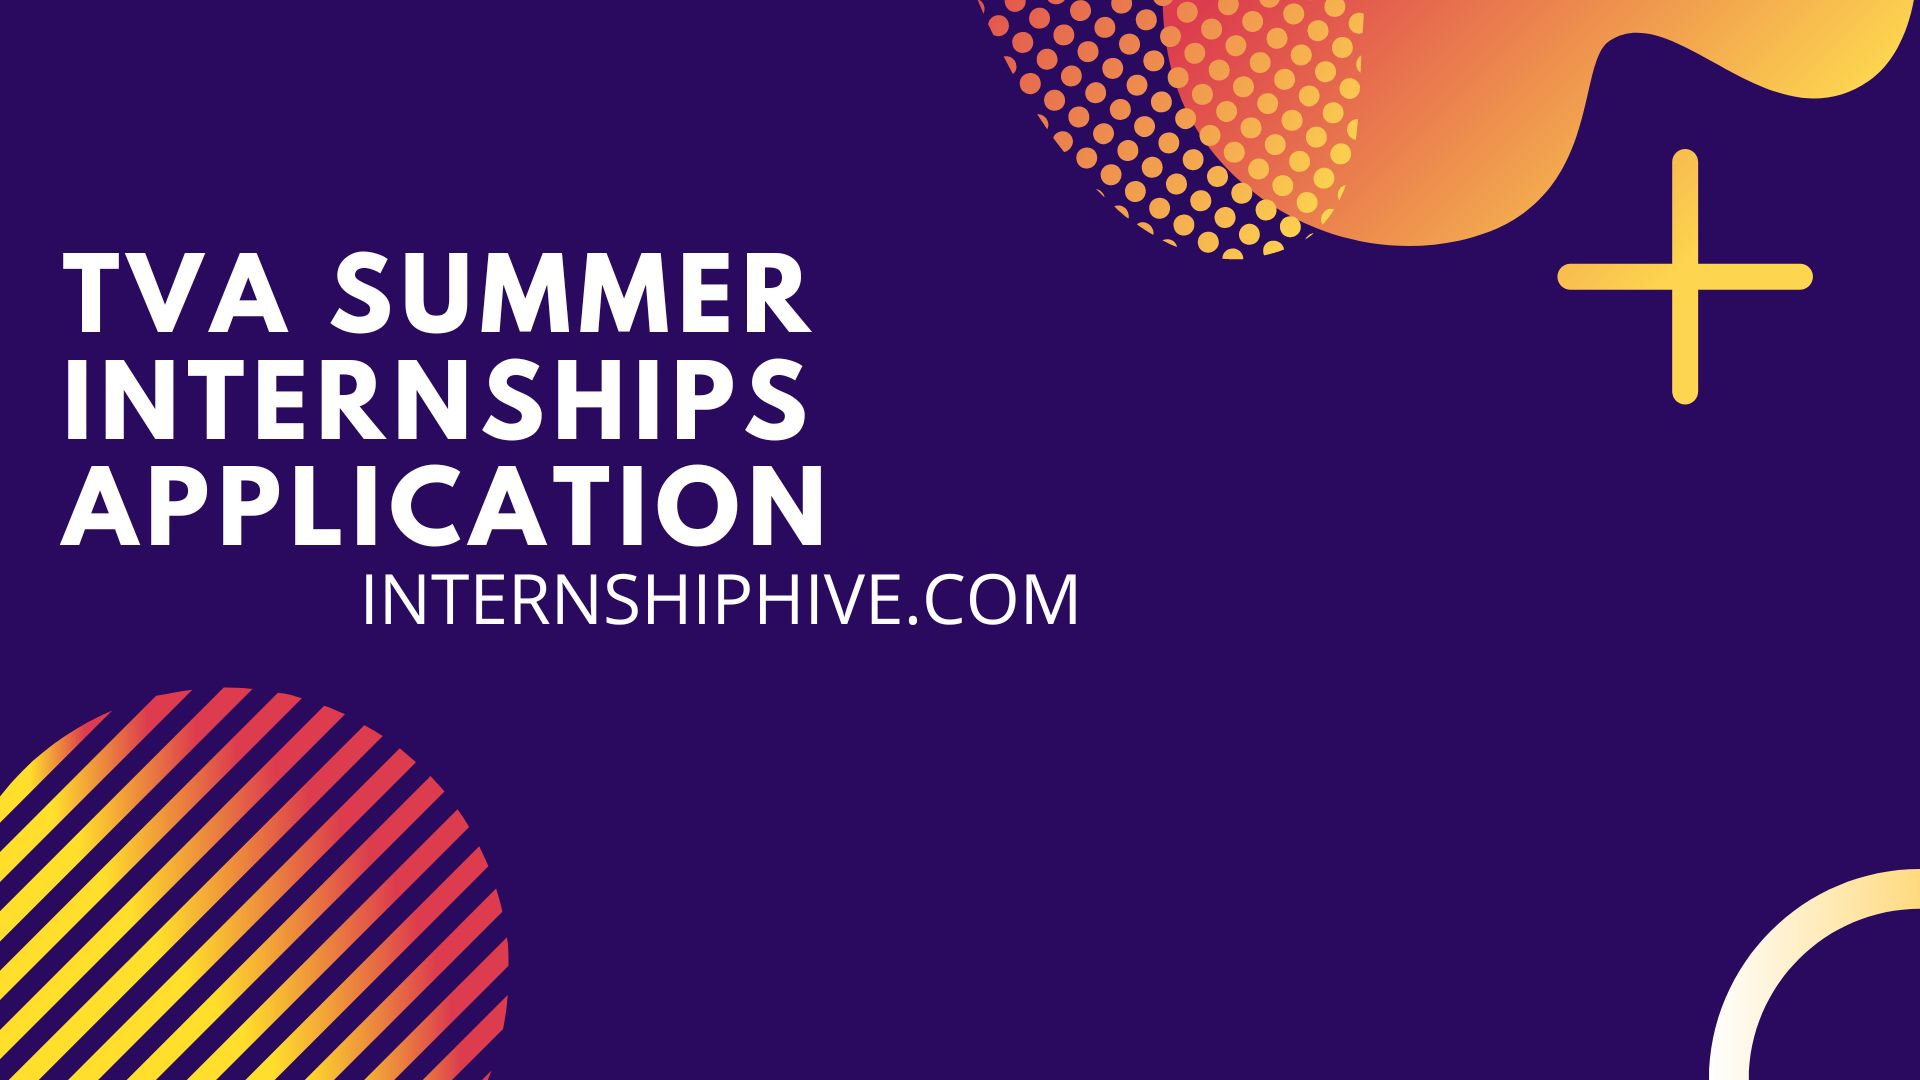 TVA-Summer-Internships-Application